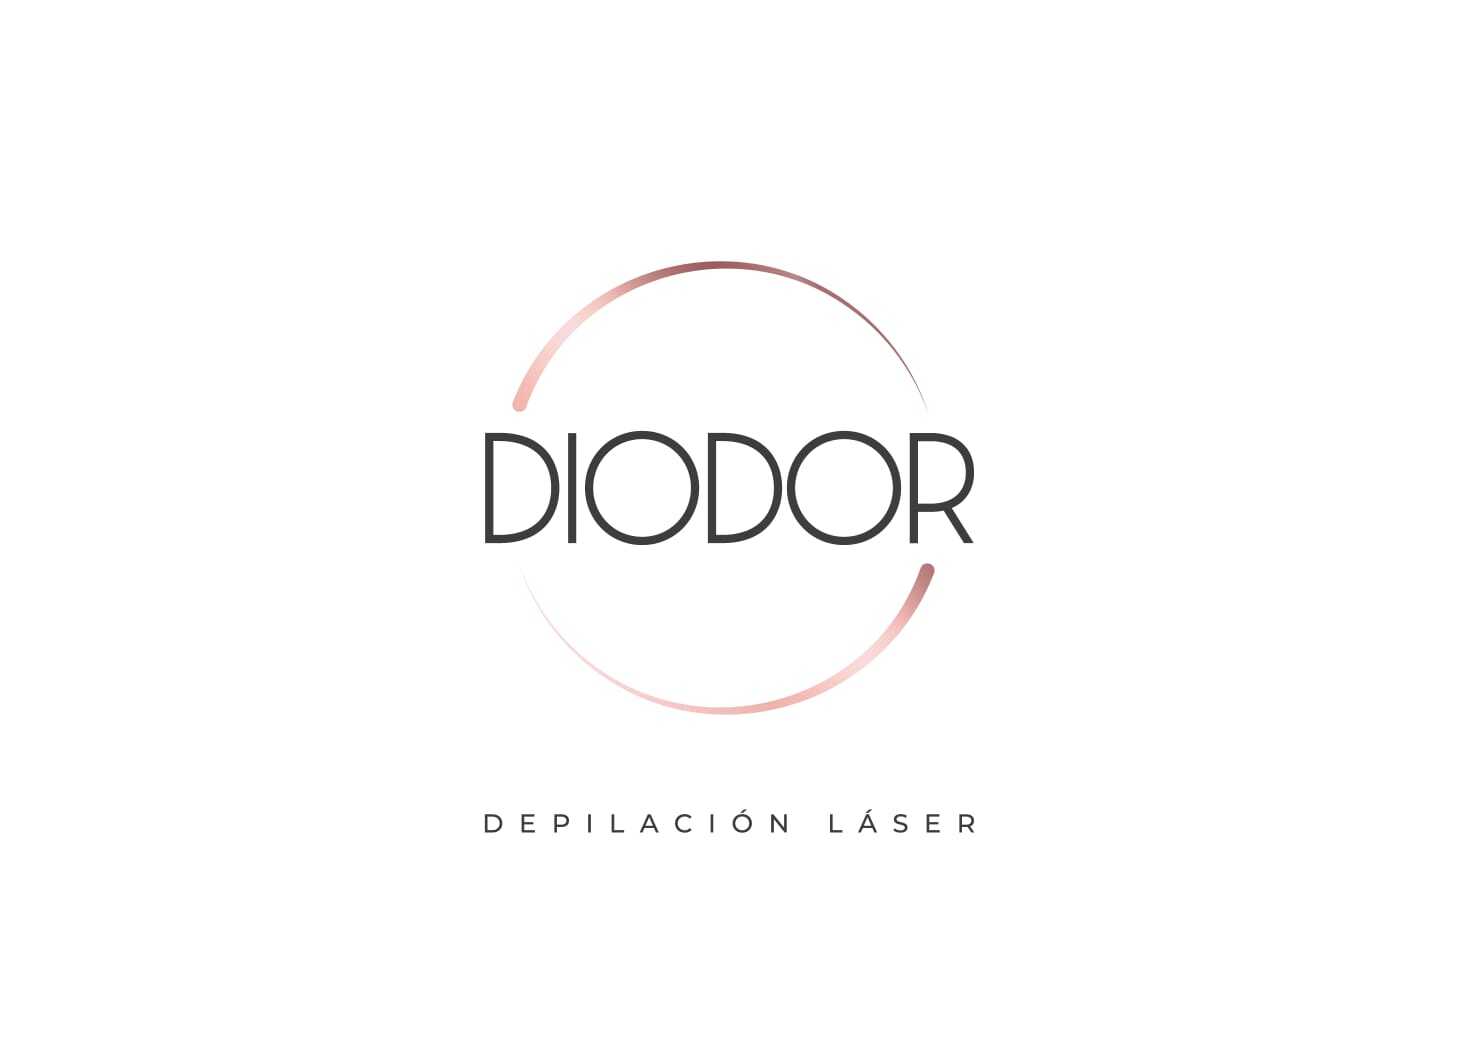 Diodor depilación láser